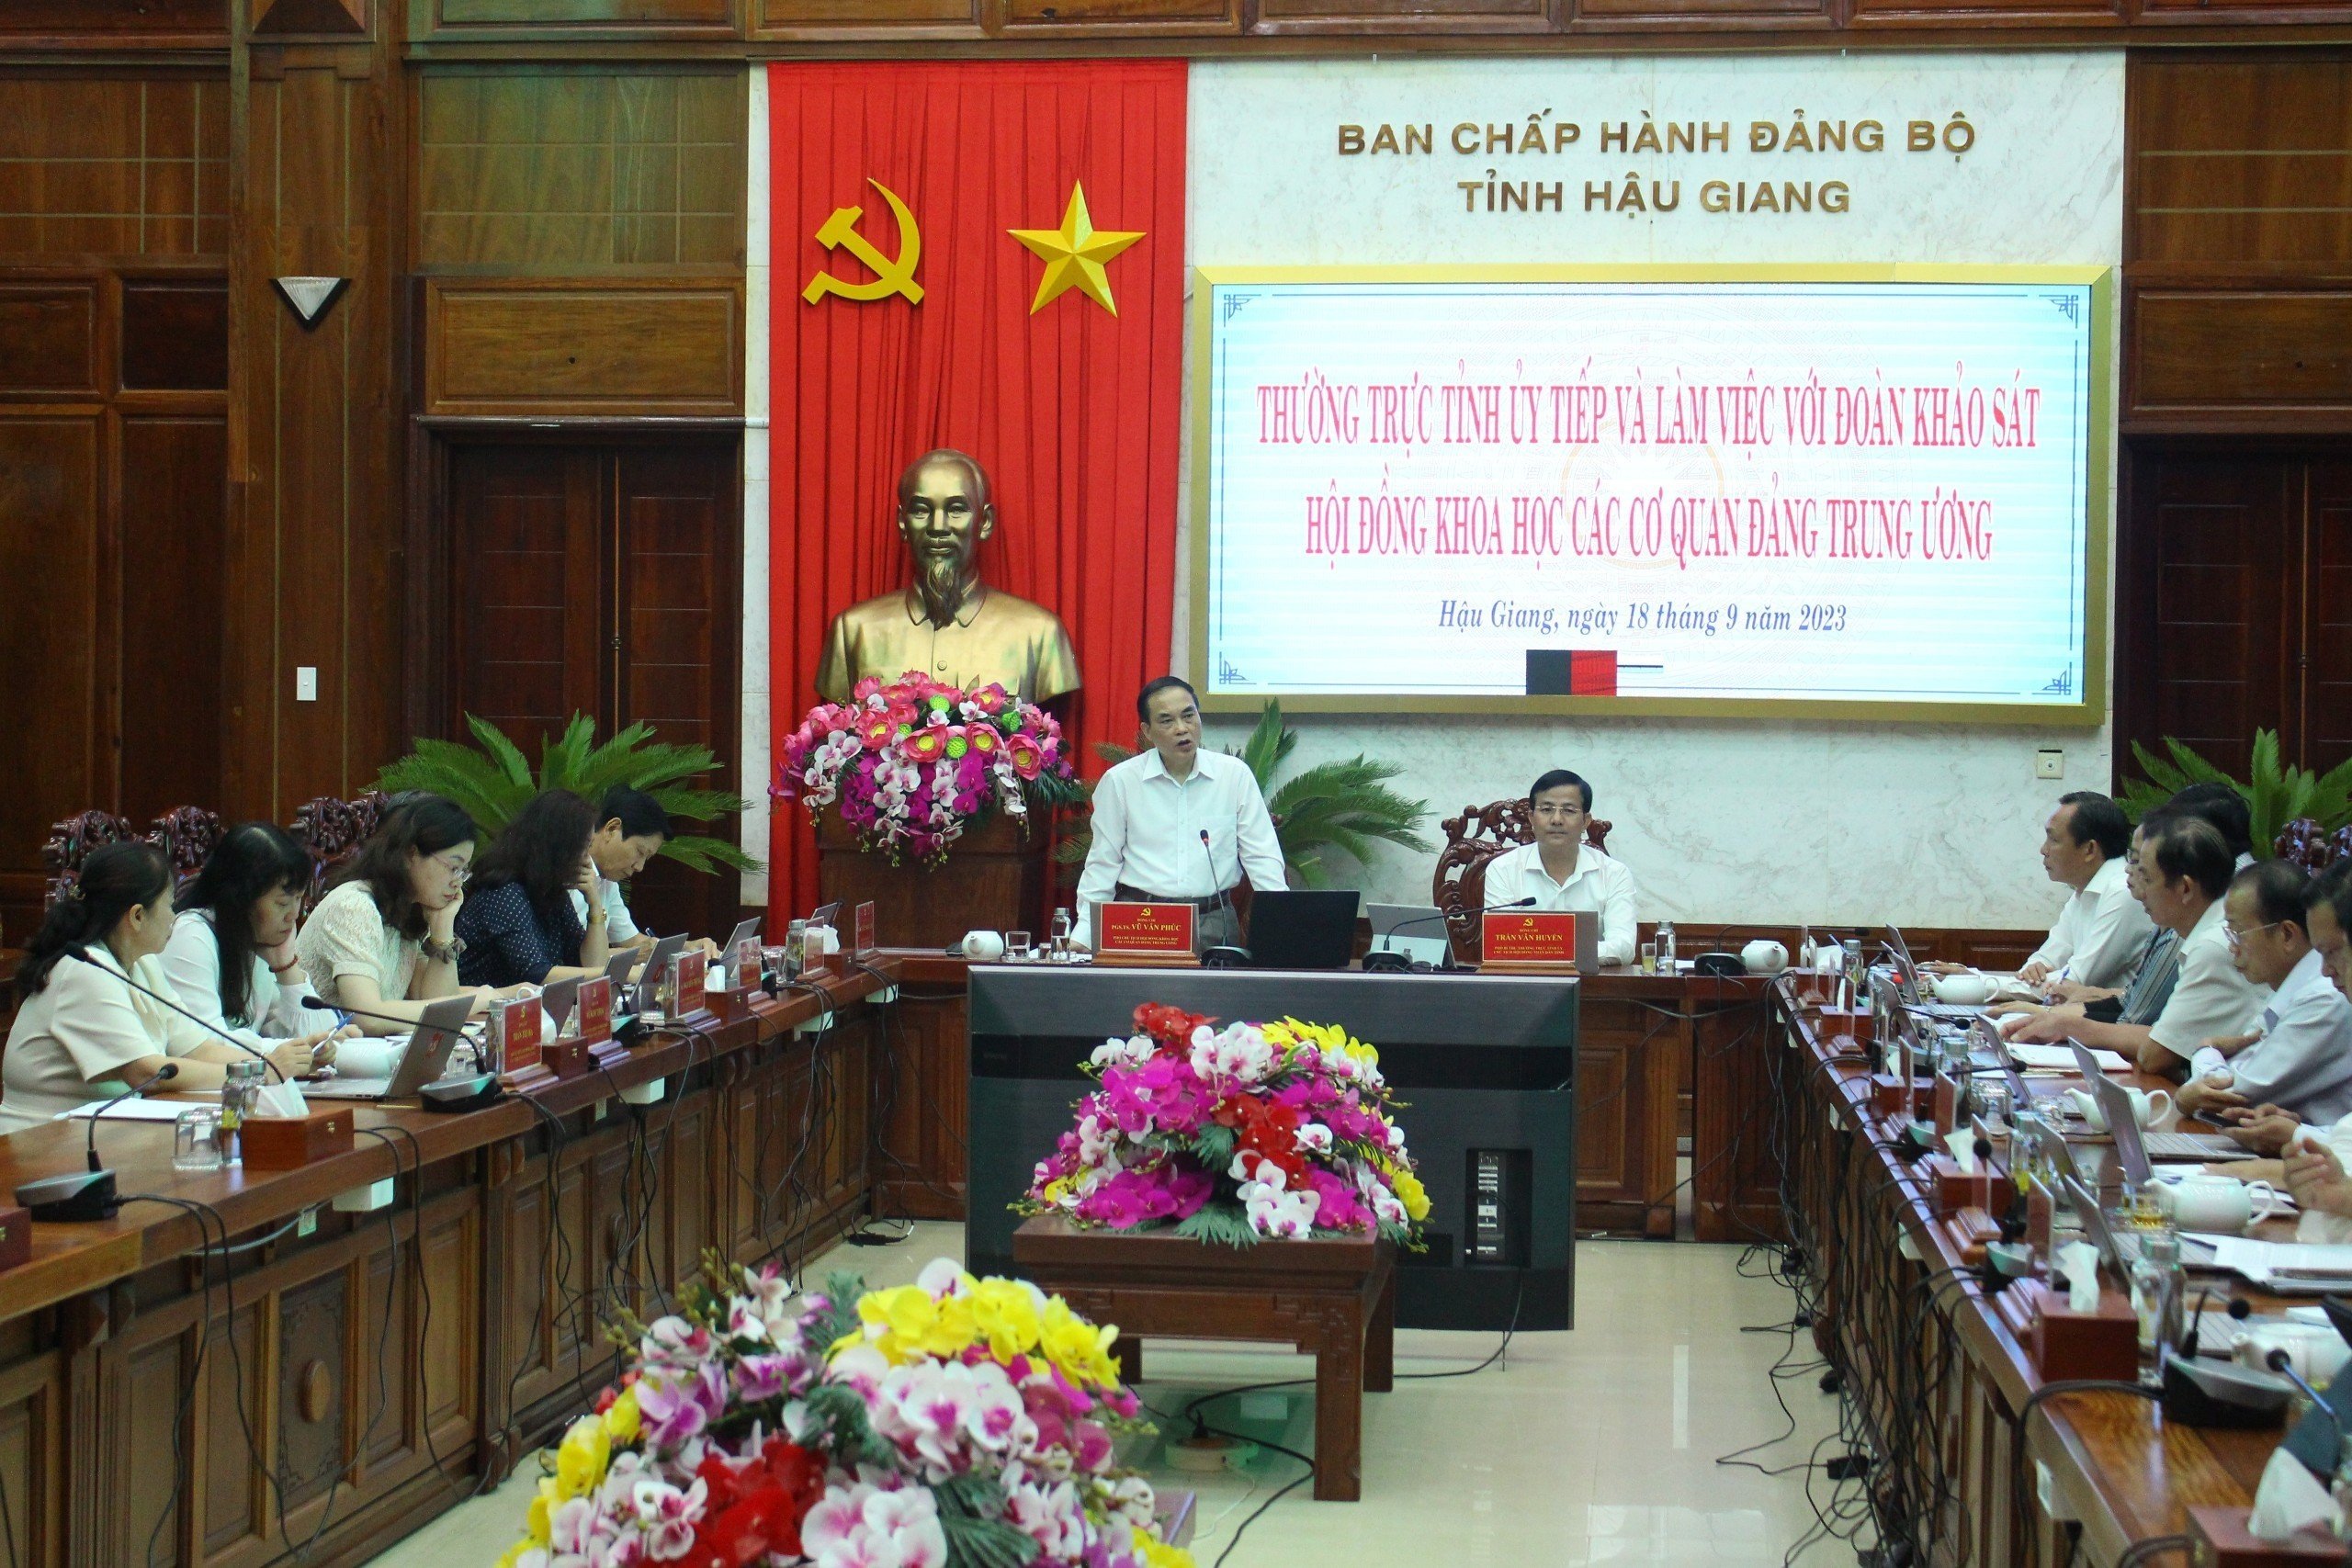 Đoàn khảo sát Hội đồng Khoa học các cơ quan Đảng Trung ương làm việc tại tỉnh Hậu Giang.